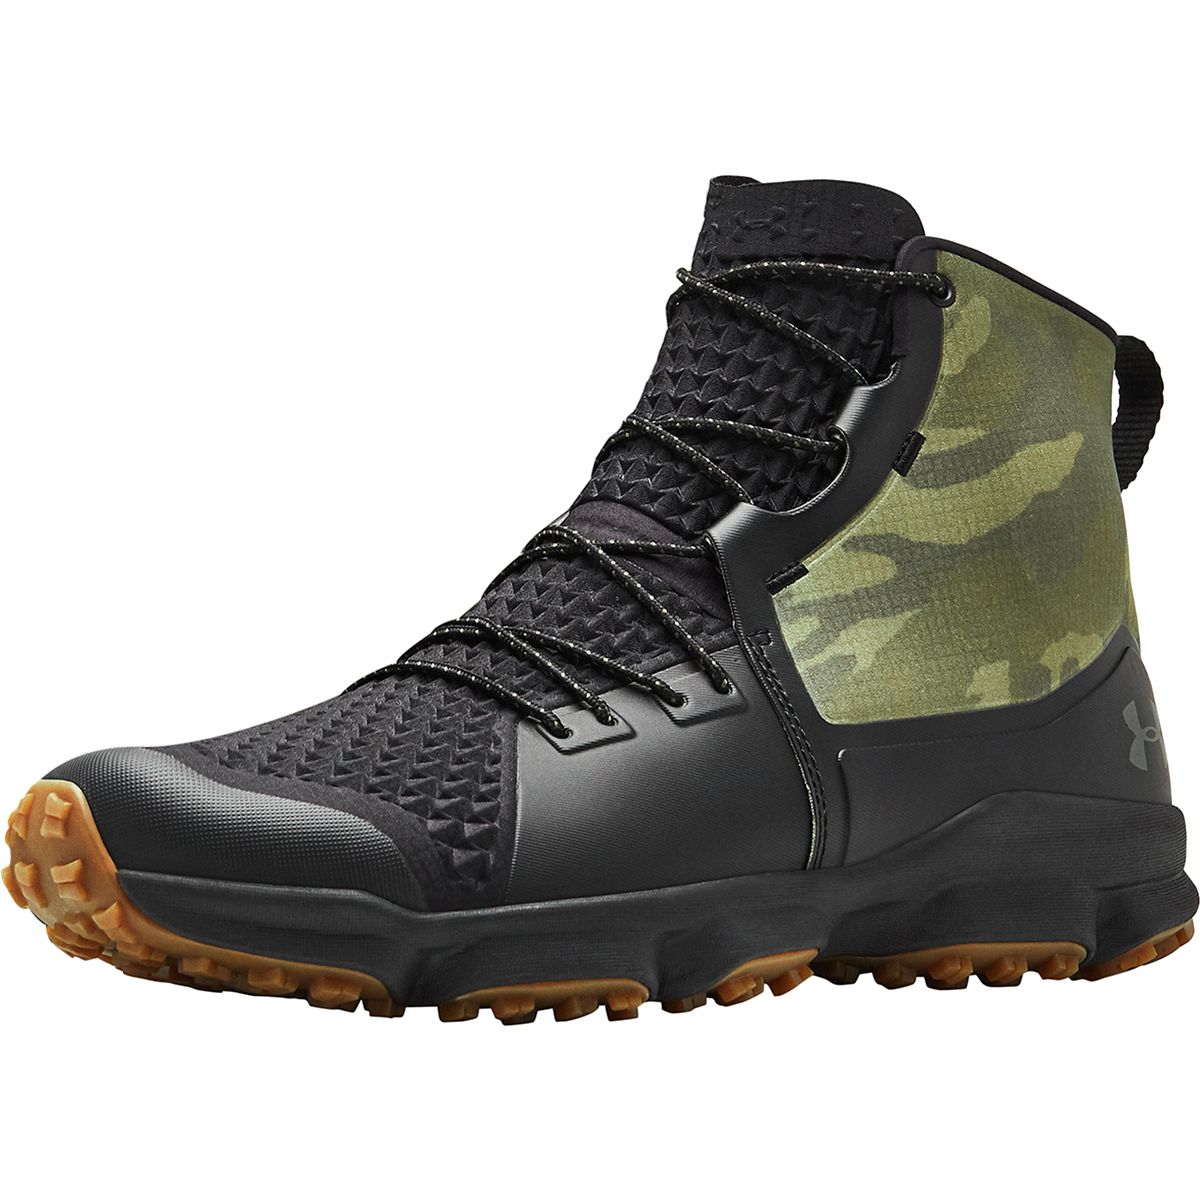 Under Armour Speedfit 2.0 Hiking Boot - Men's | eBay